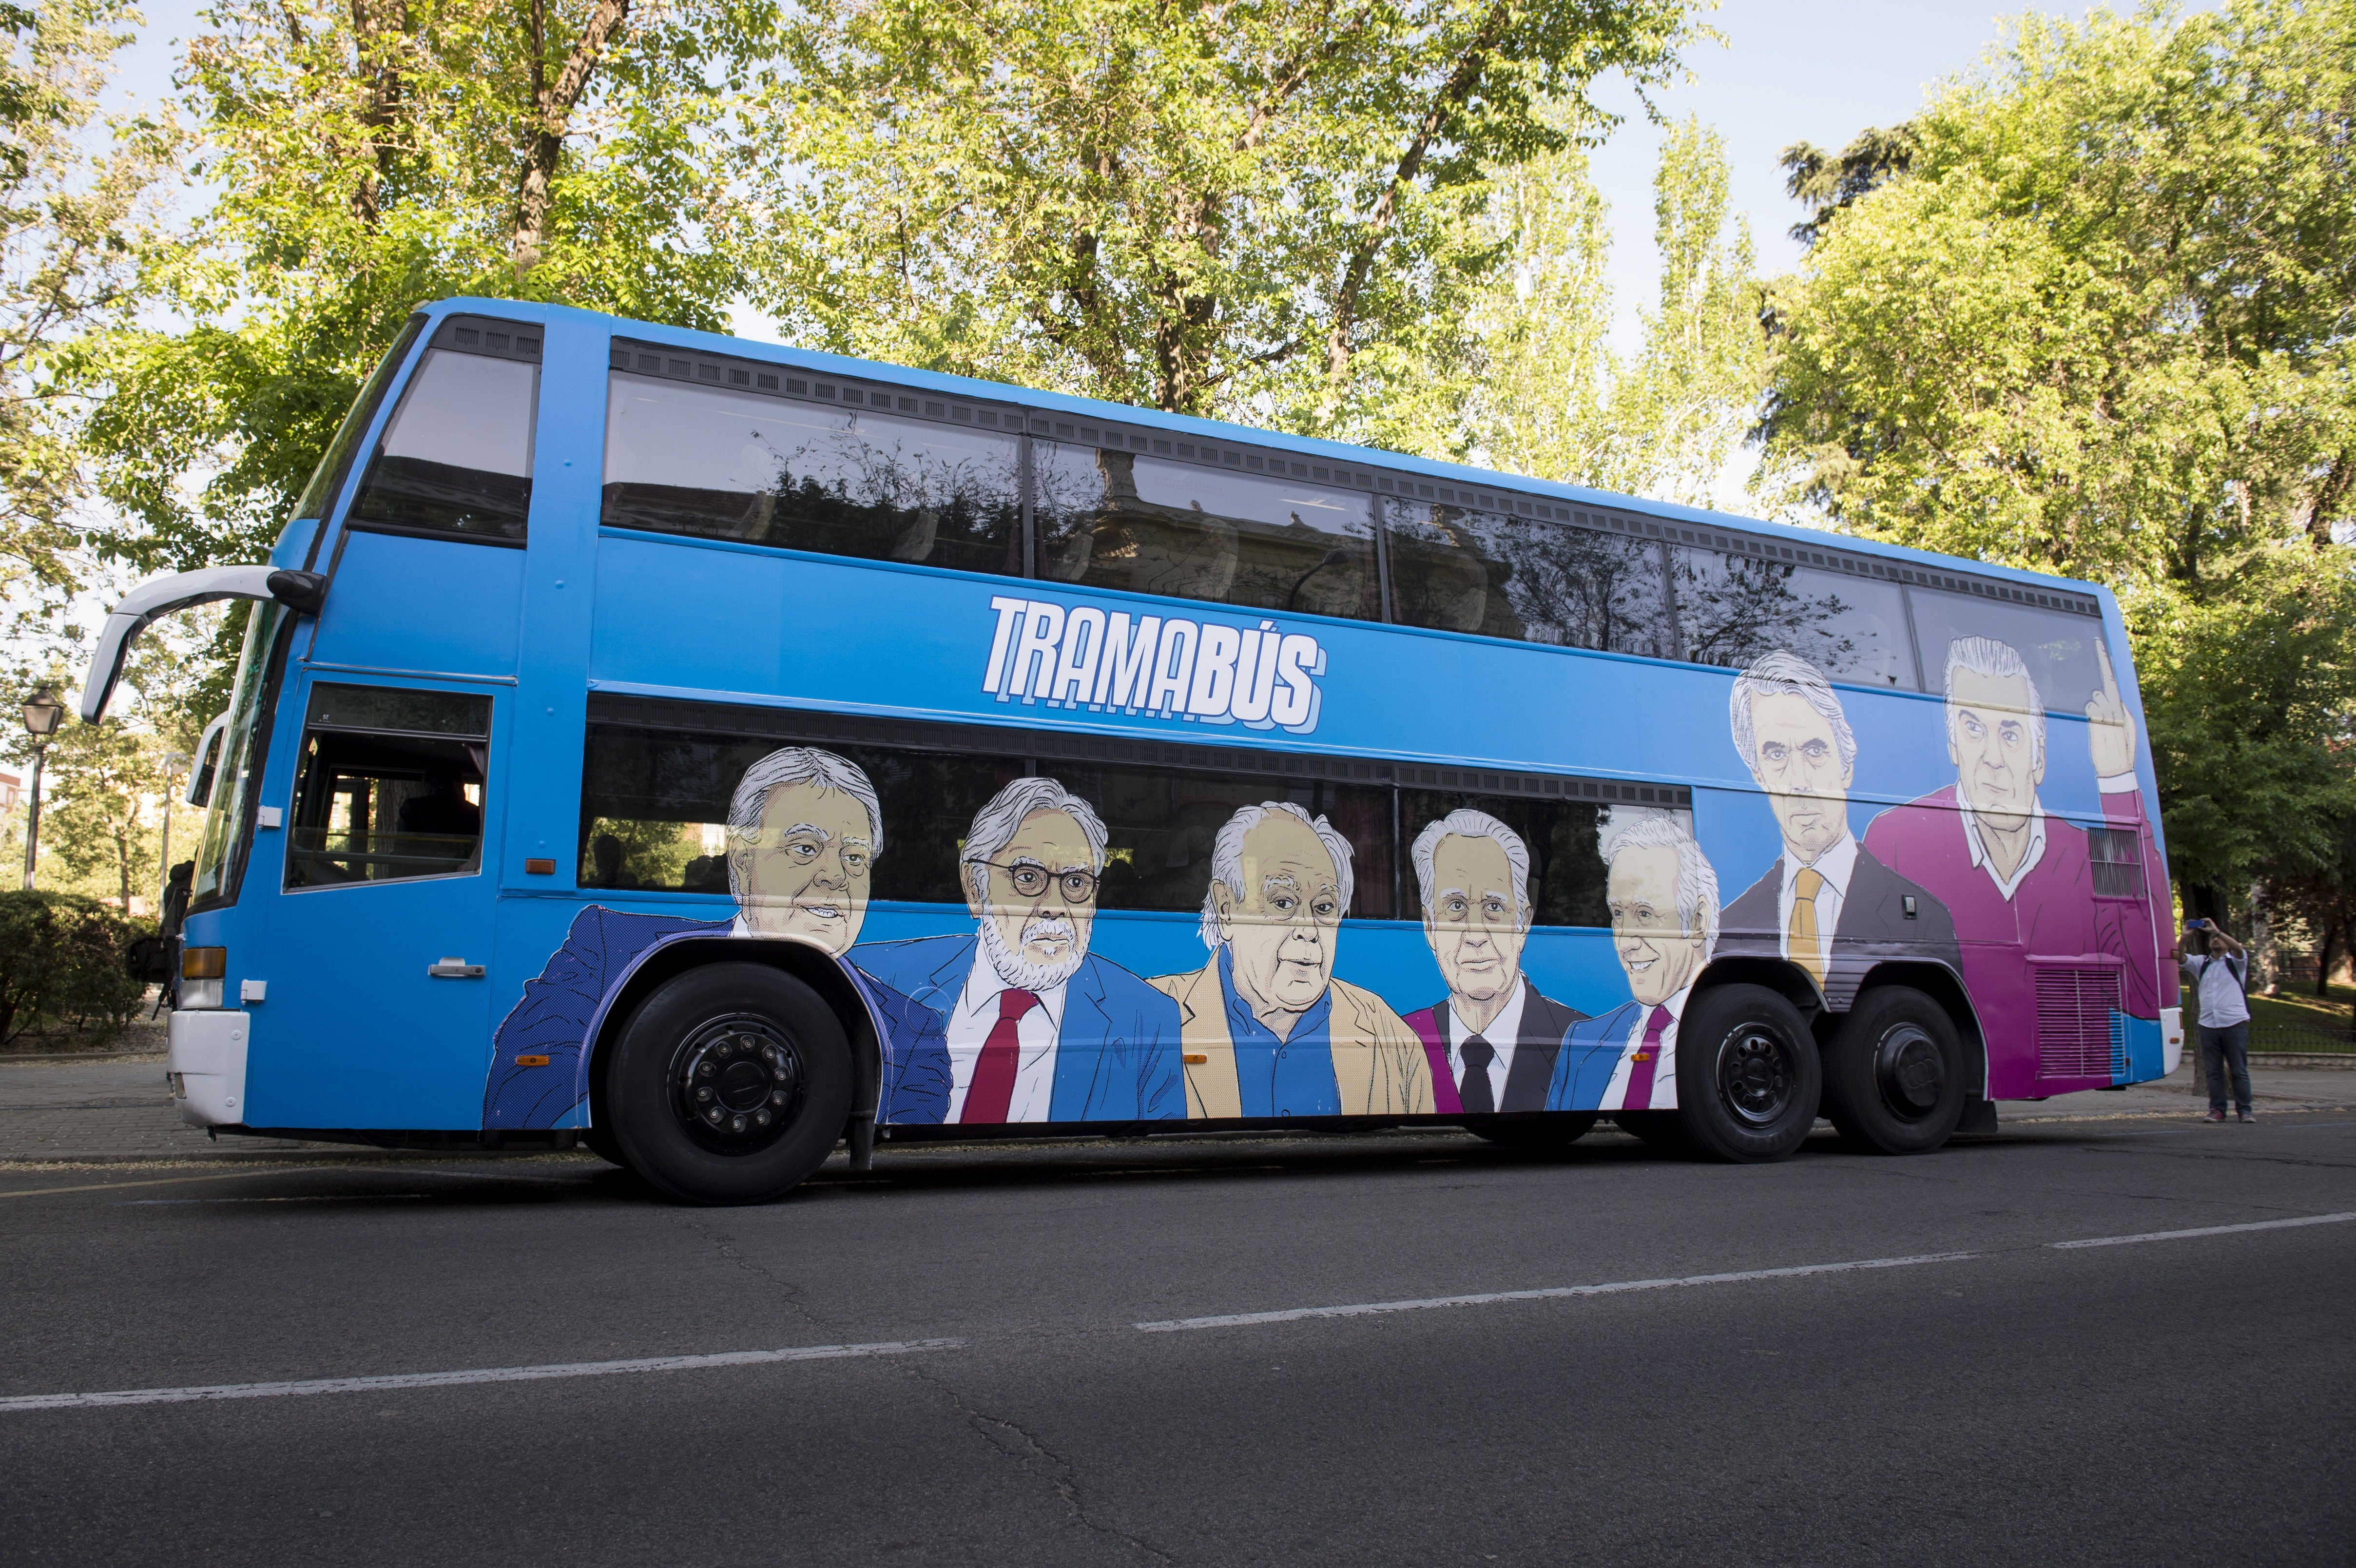 Podemos pone en marcha el 'Tramabús' para denunciar las relaciones de poder en España